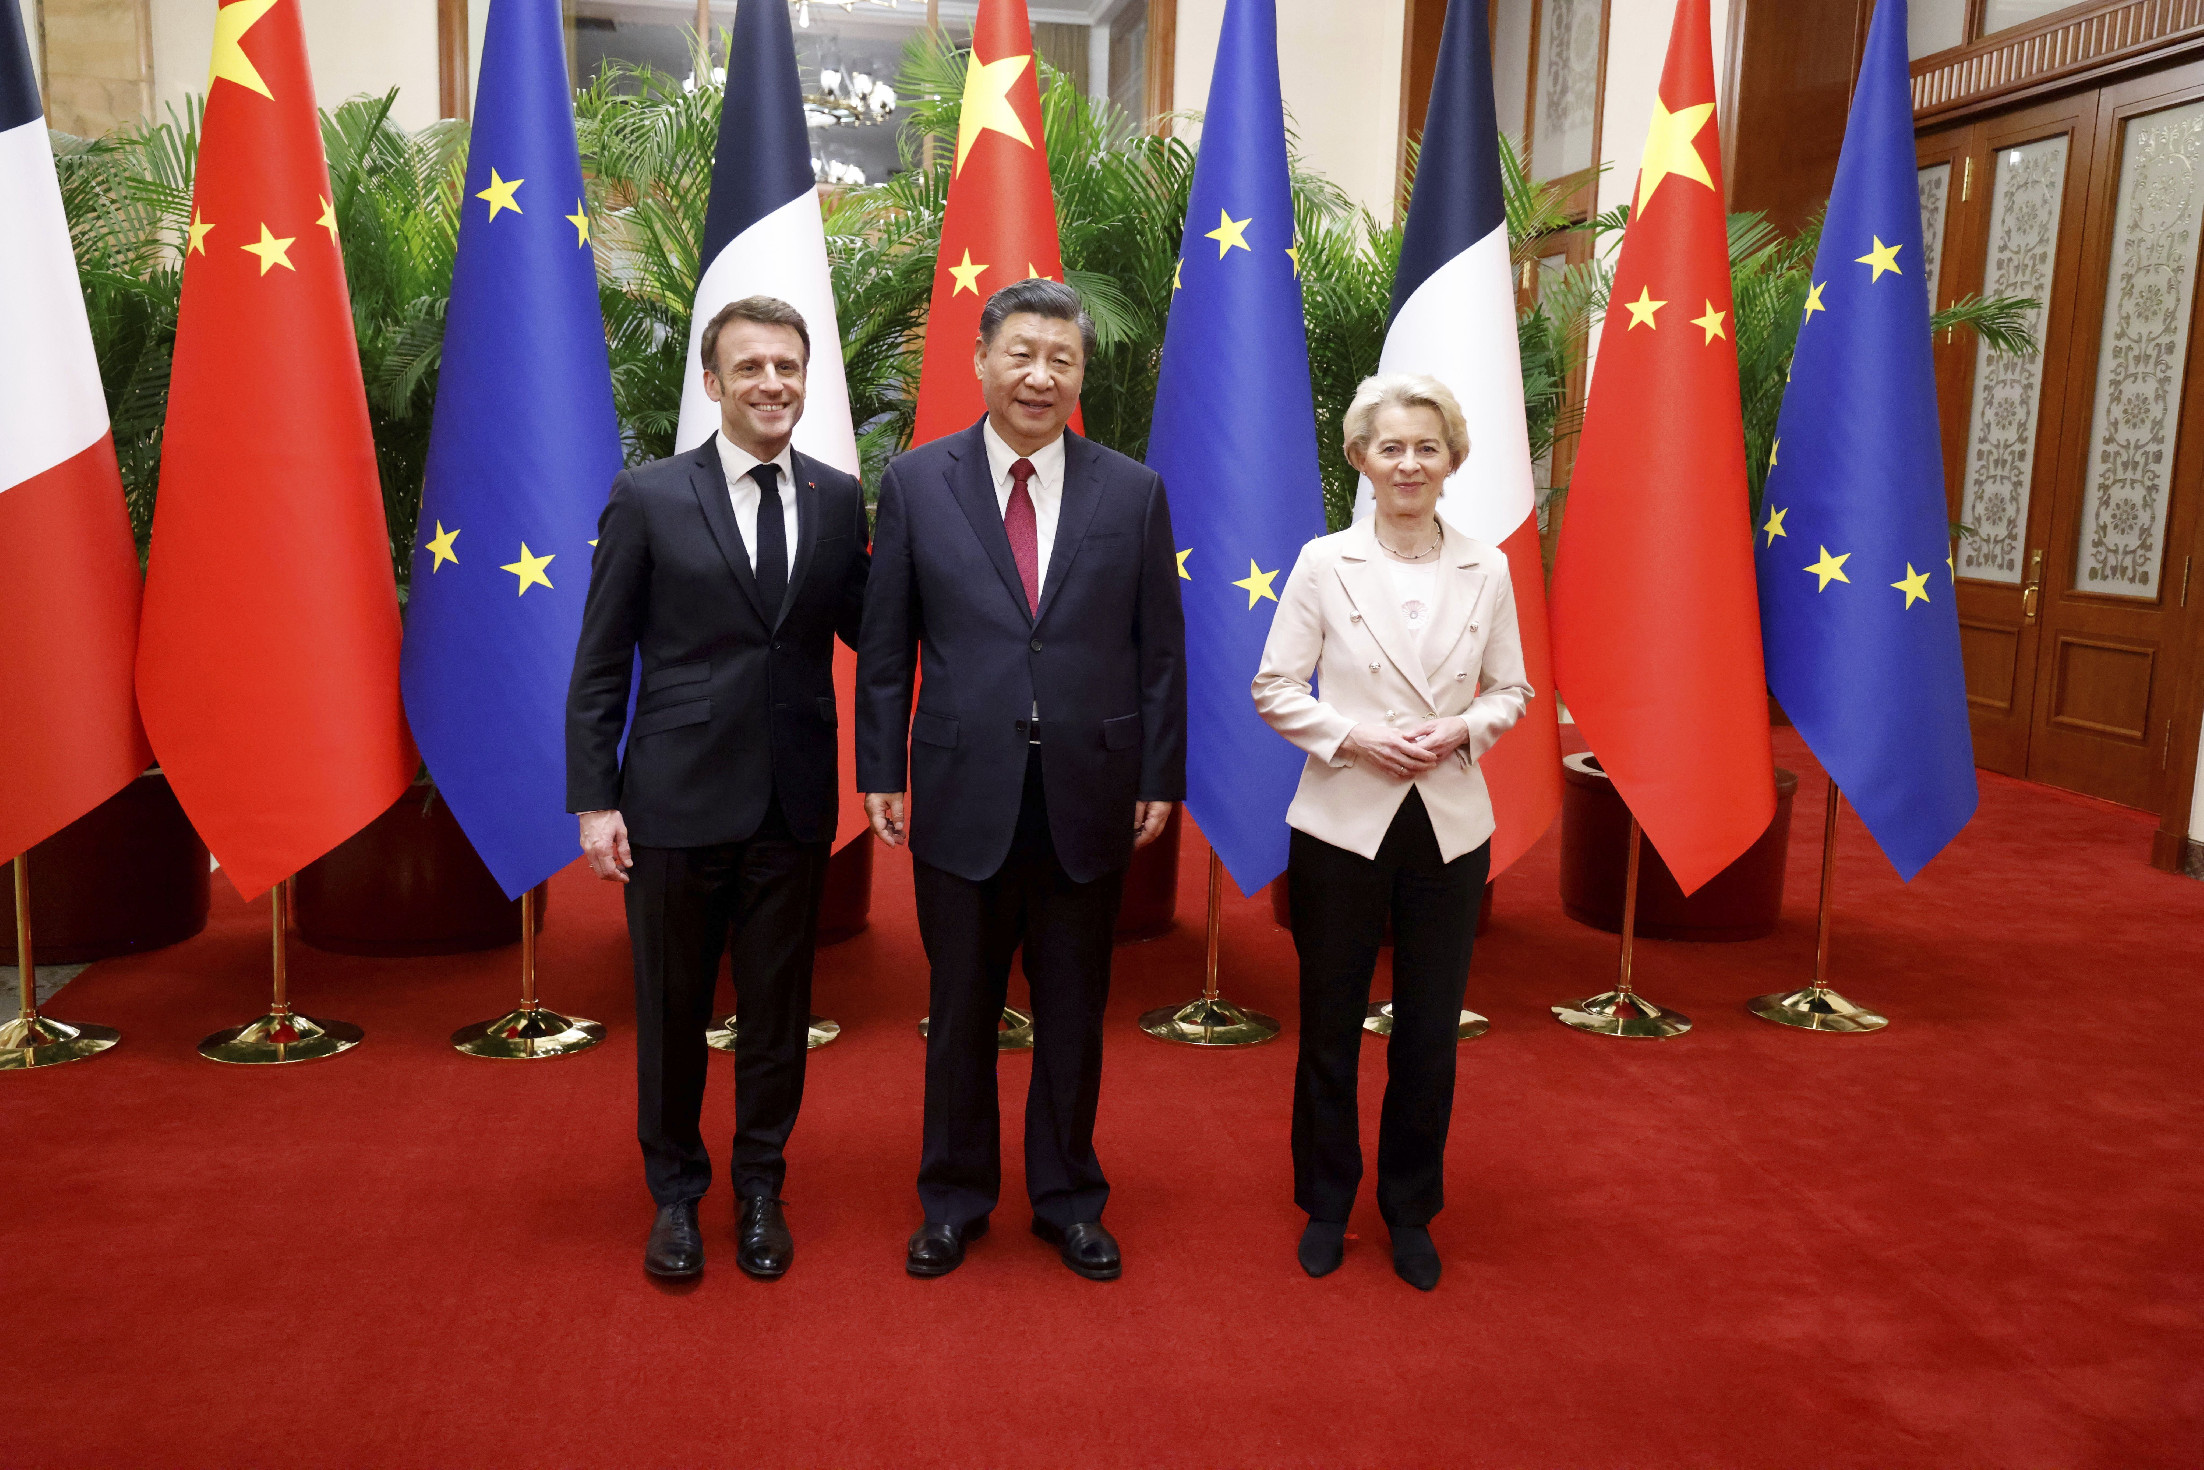 Macron és Von der Leyen Kínában tárgyal